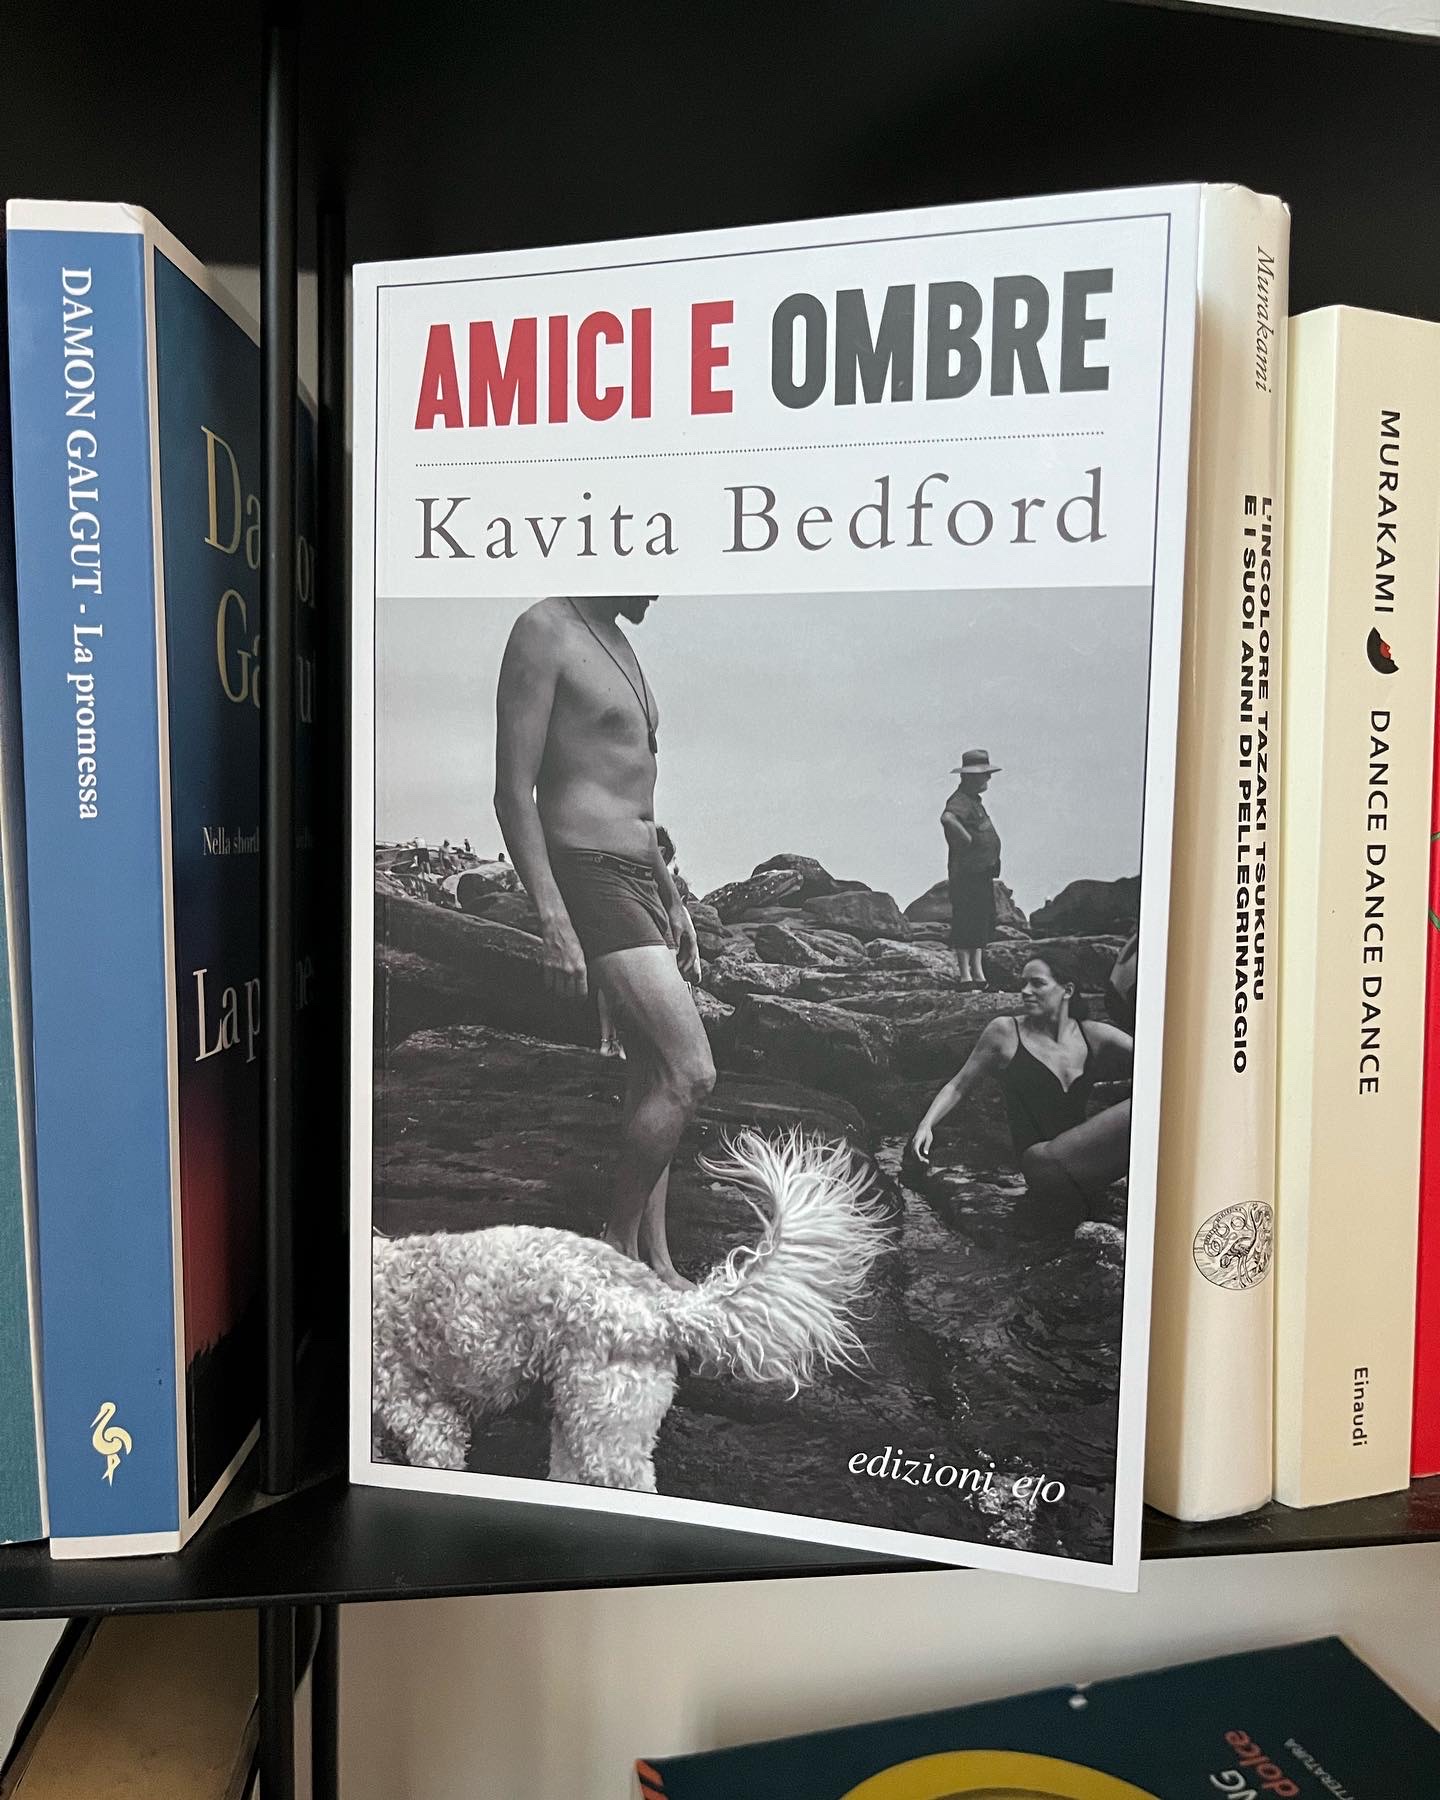 copertina del libro amici e ombre di kavita bedford con una foto in bianco e nero di una spiaggia di scogli, un uomo e un cane